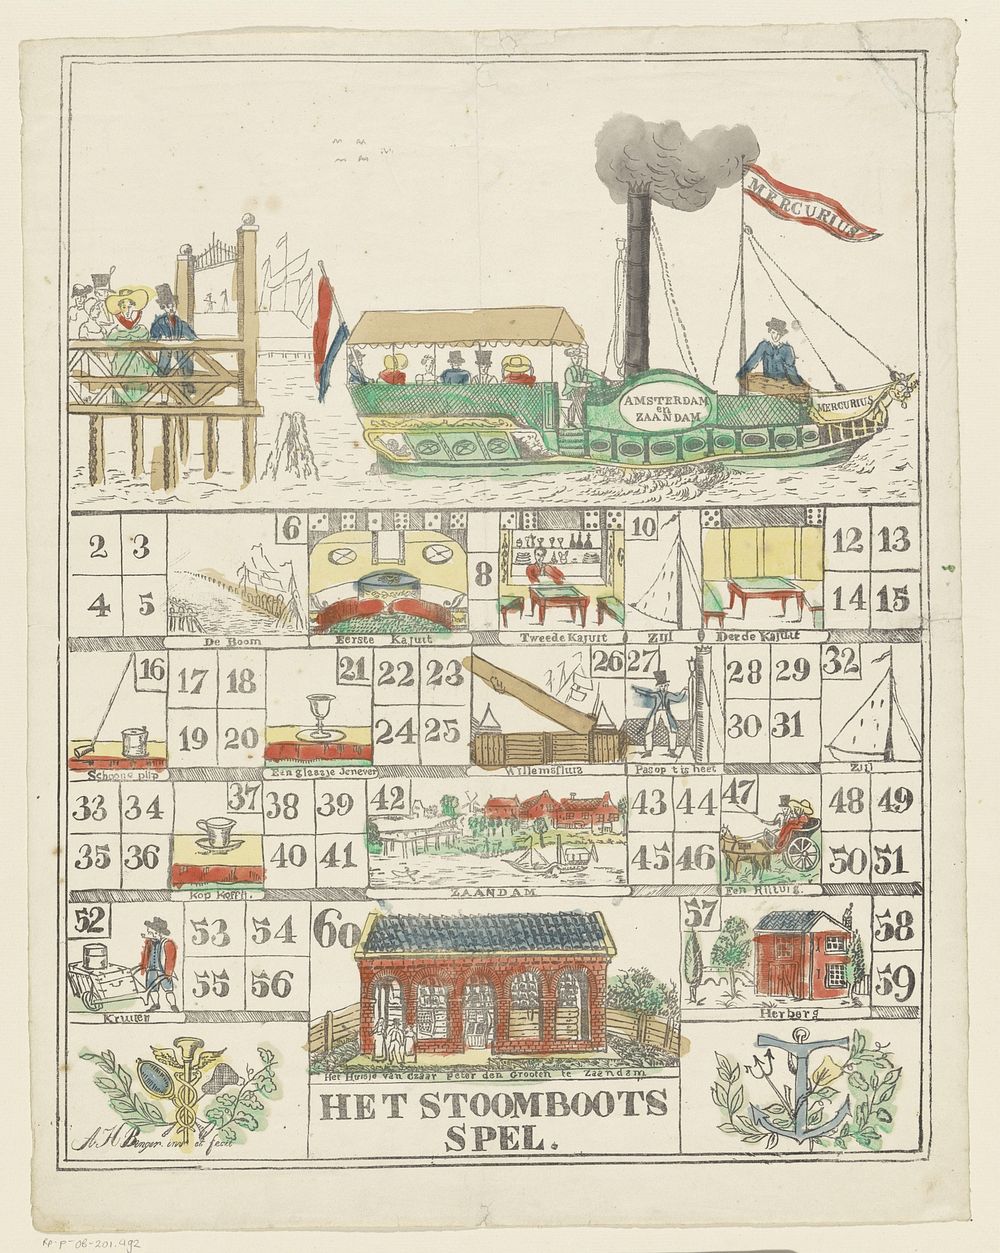 Het Stoomboots / spel (c. 1850) by Aron Hijman Binger and Aron Hijman Binger